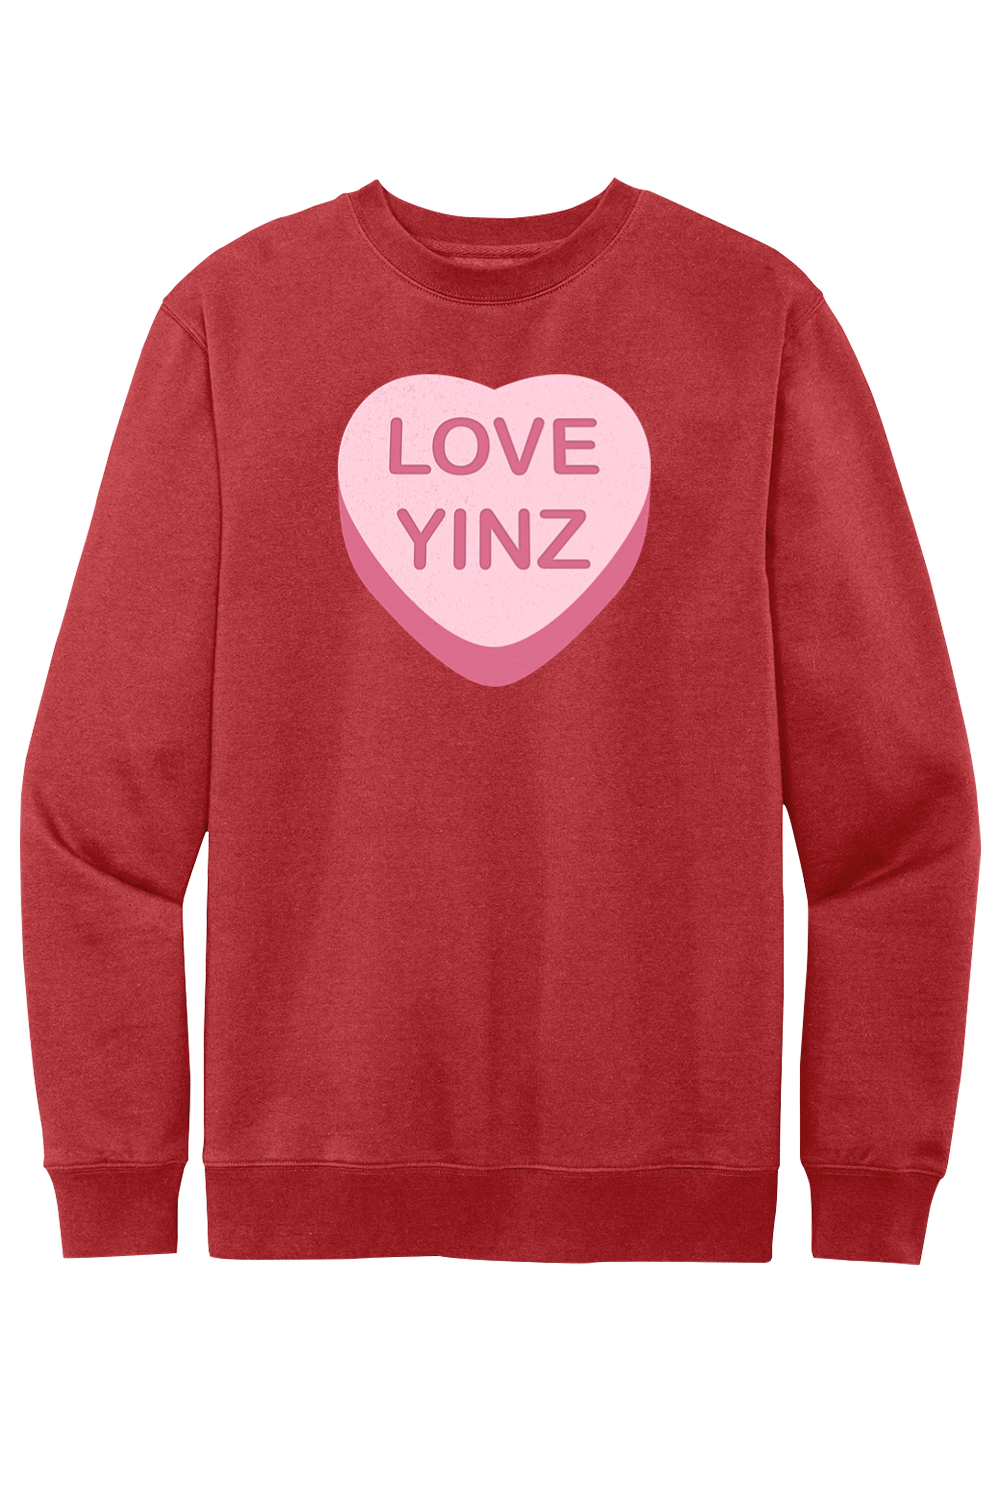 Love Yinz - Conversation Heart - Fleece Crewneck Sweatshirt - Yinzylvania